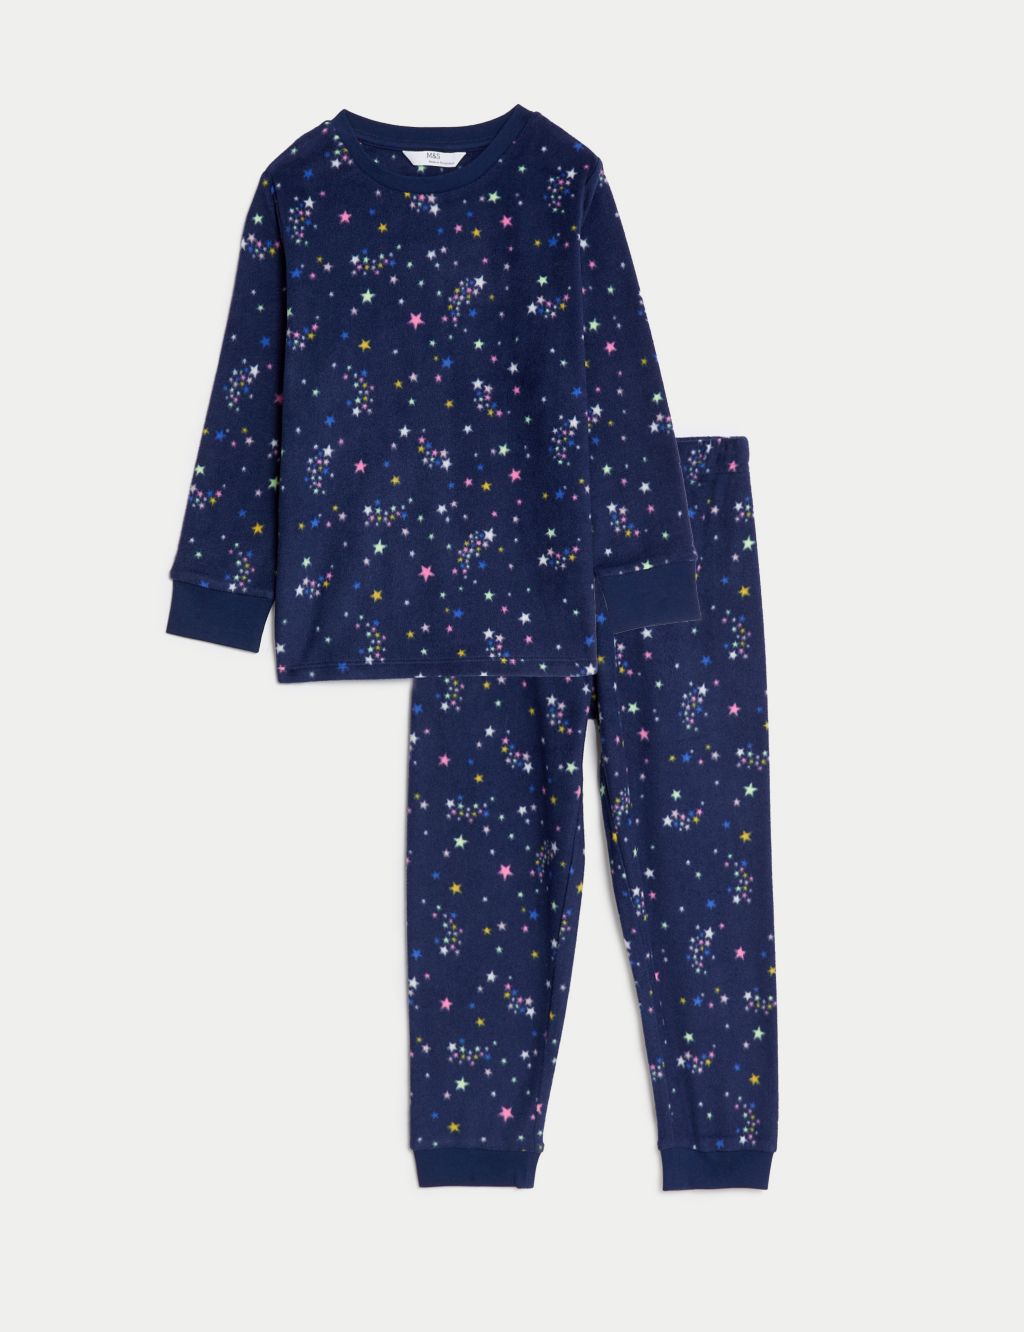 Fleece Star Print Pyjamas (1-16 Yrs) image 1